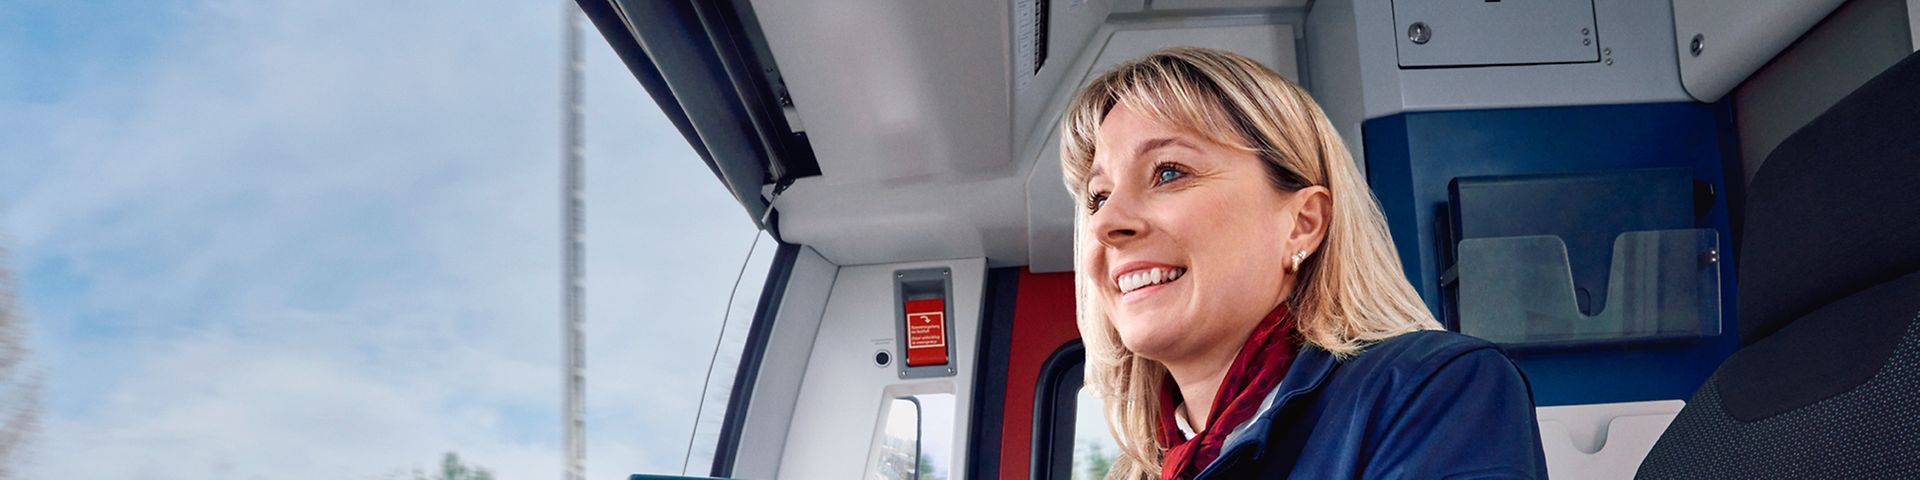 Eine Lokführerin der S-Bahn Berlin sitzt in Unternehmensbekleidung im Führerstand und steuert den Zug